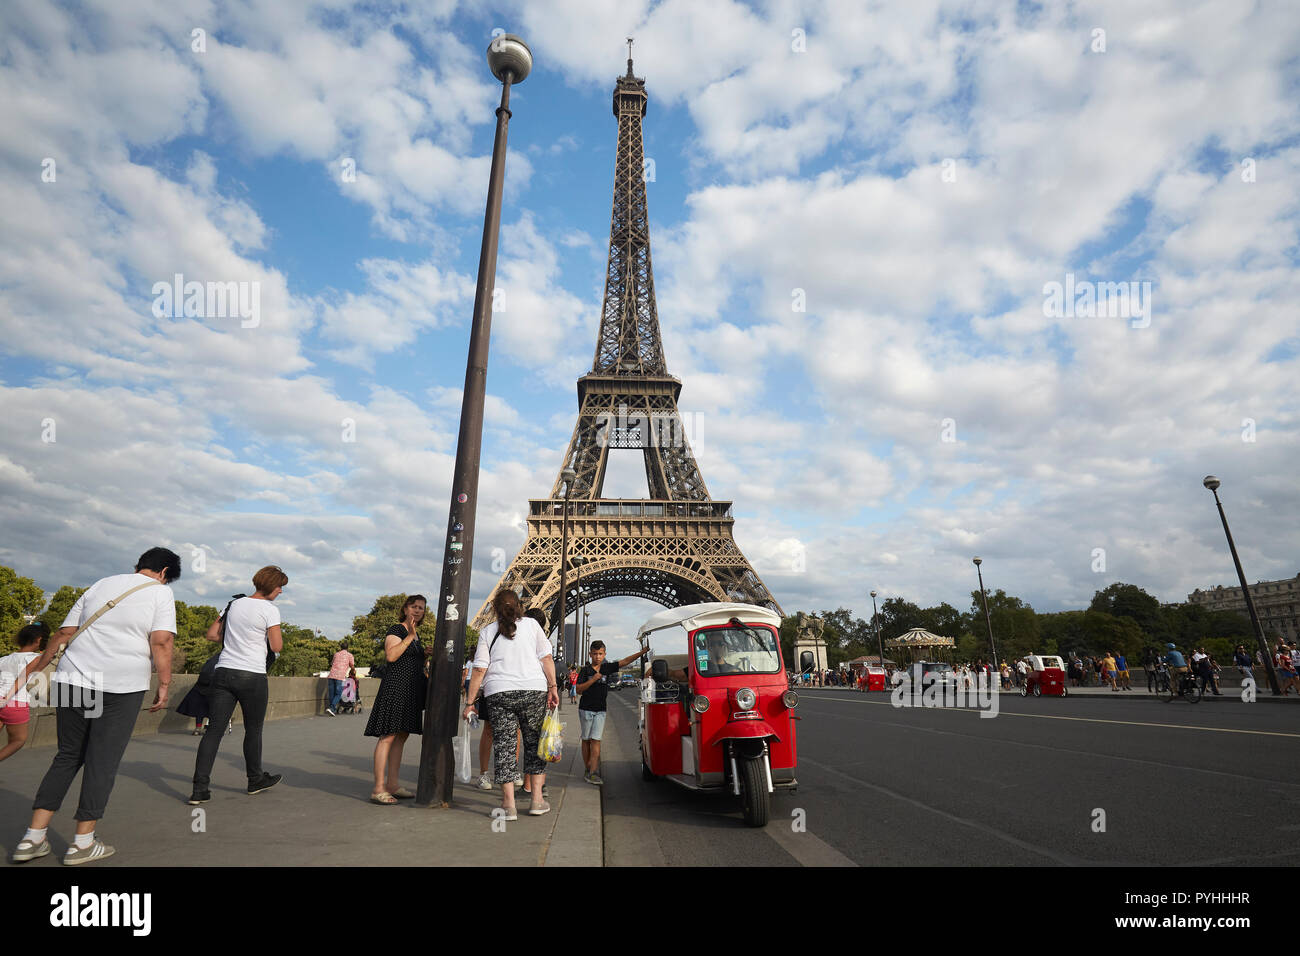 Paris, Ile-de-France, France - touristes stand à un autorickshaw sur le pont d'Iéna pont, dans l'arrière-plan la Tour Eiffel - le principal monument de la capitale française. Banque D'Images